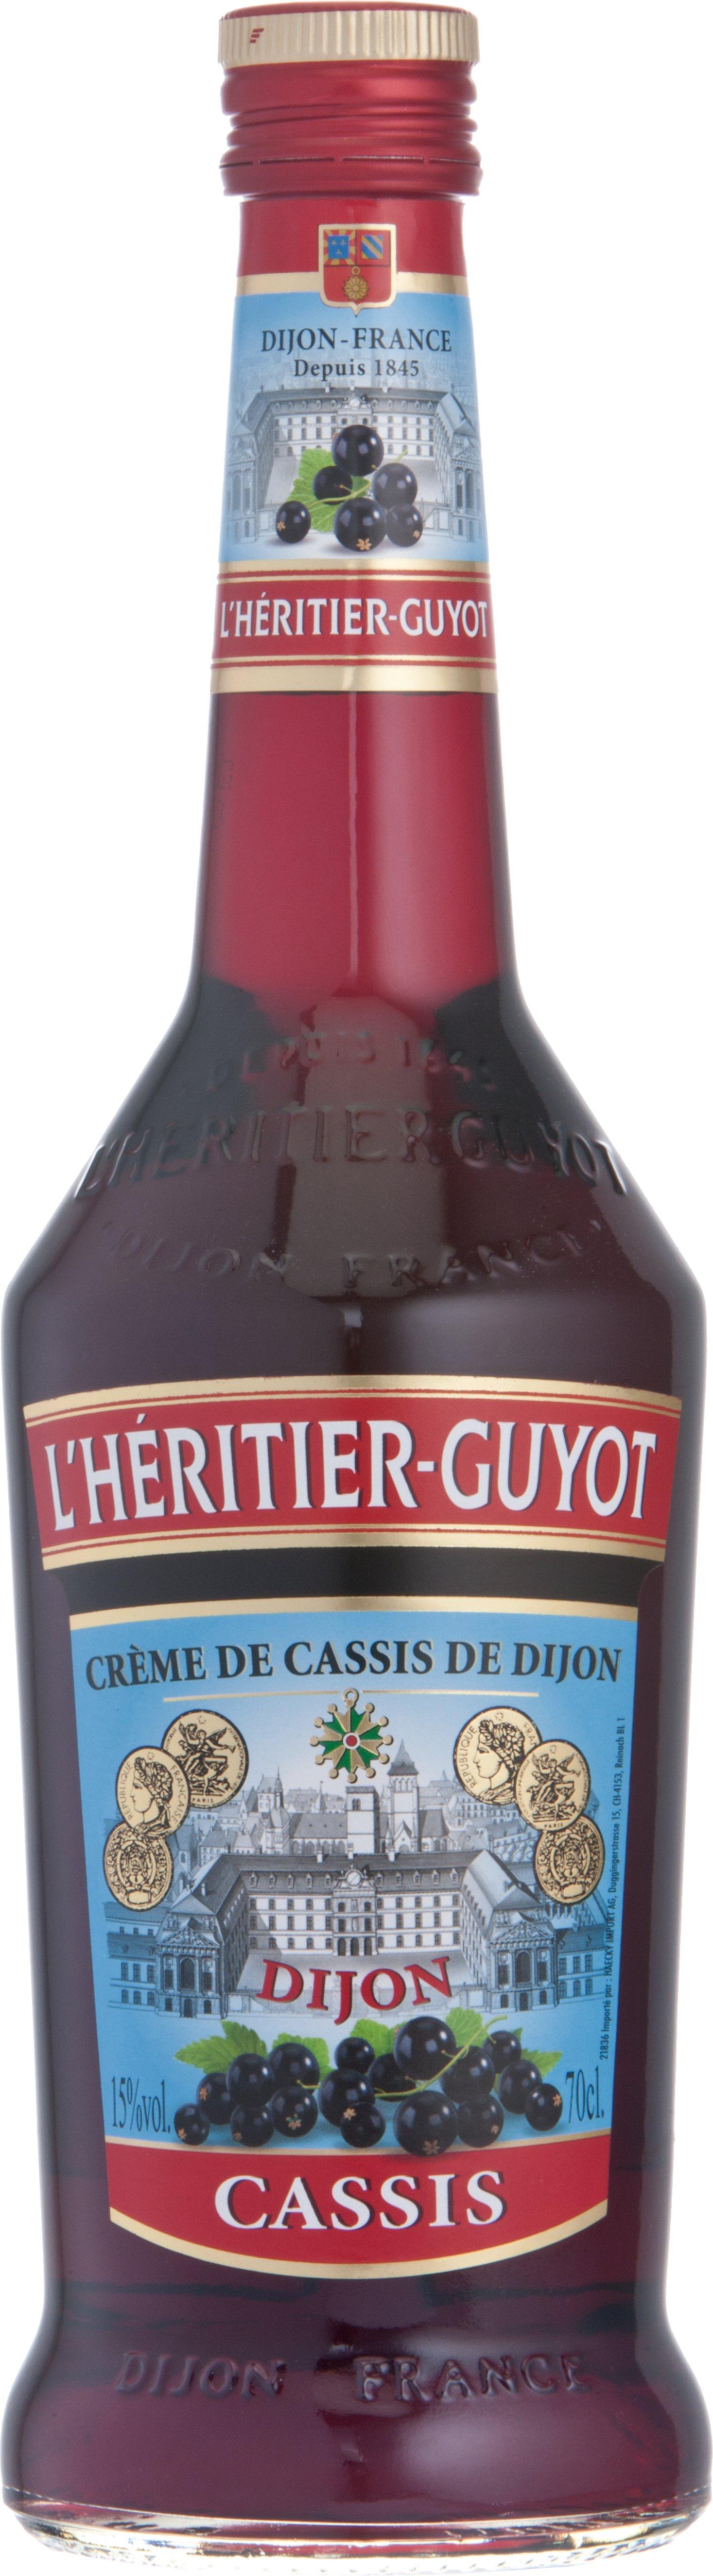 L'Héritier-Guyot Crème de Cassis  